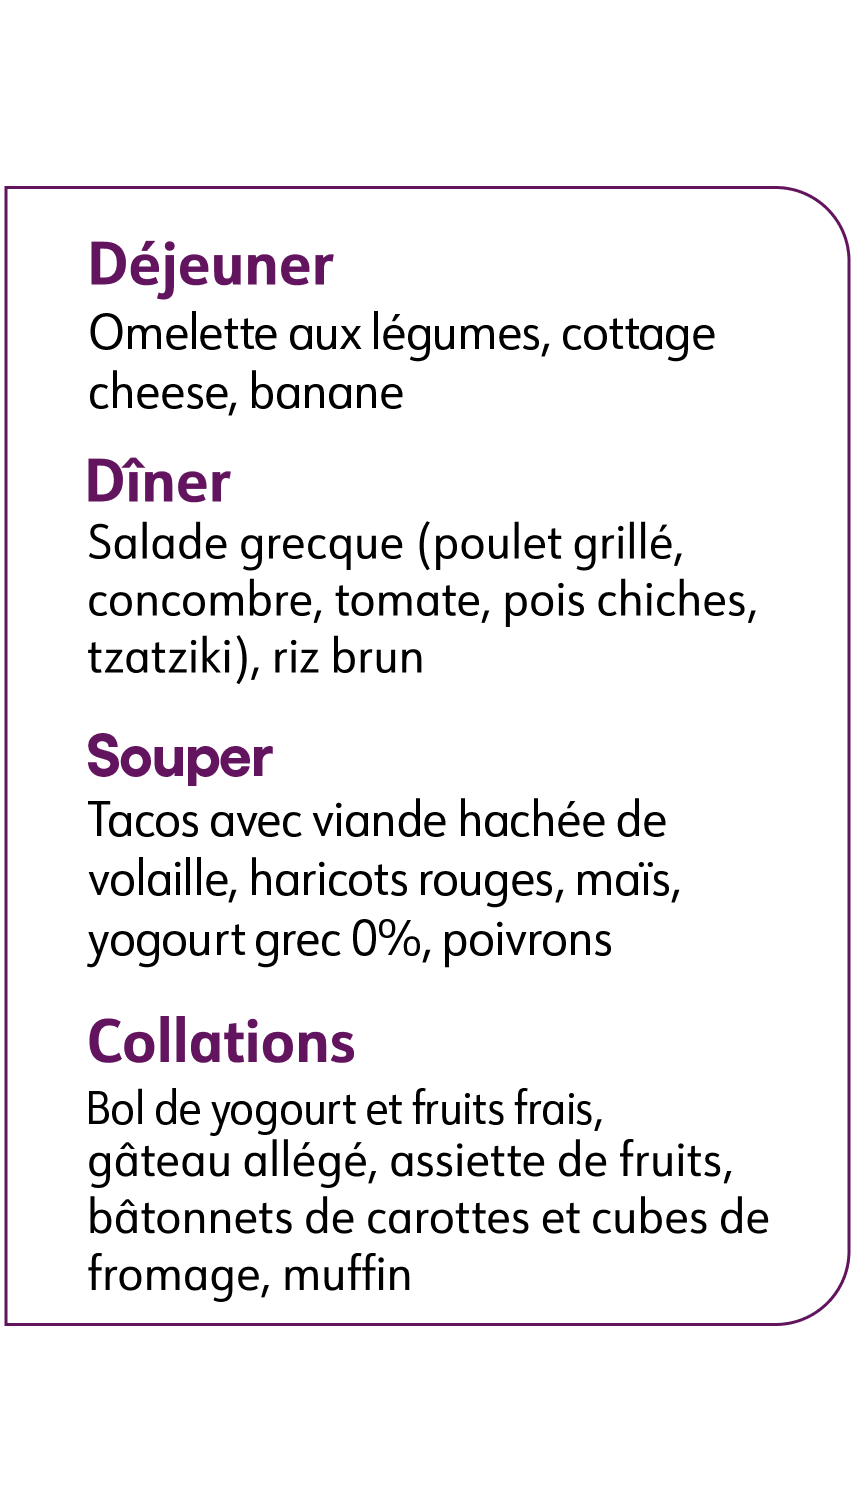 La journée type de Mélanie. Déjeuner: omelette aux légumes, cottage cheese, banane. Diner: Salade grecque. Souper: Tacos. Collations: yogourt et fruits frais.